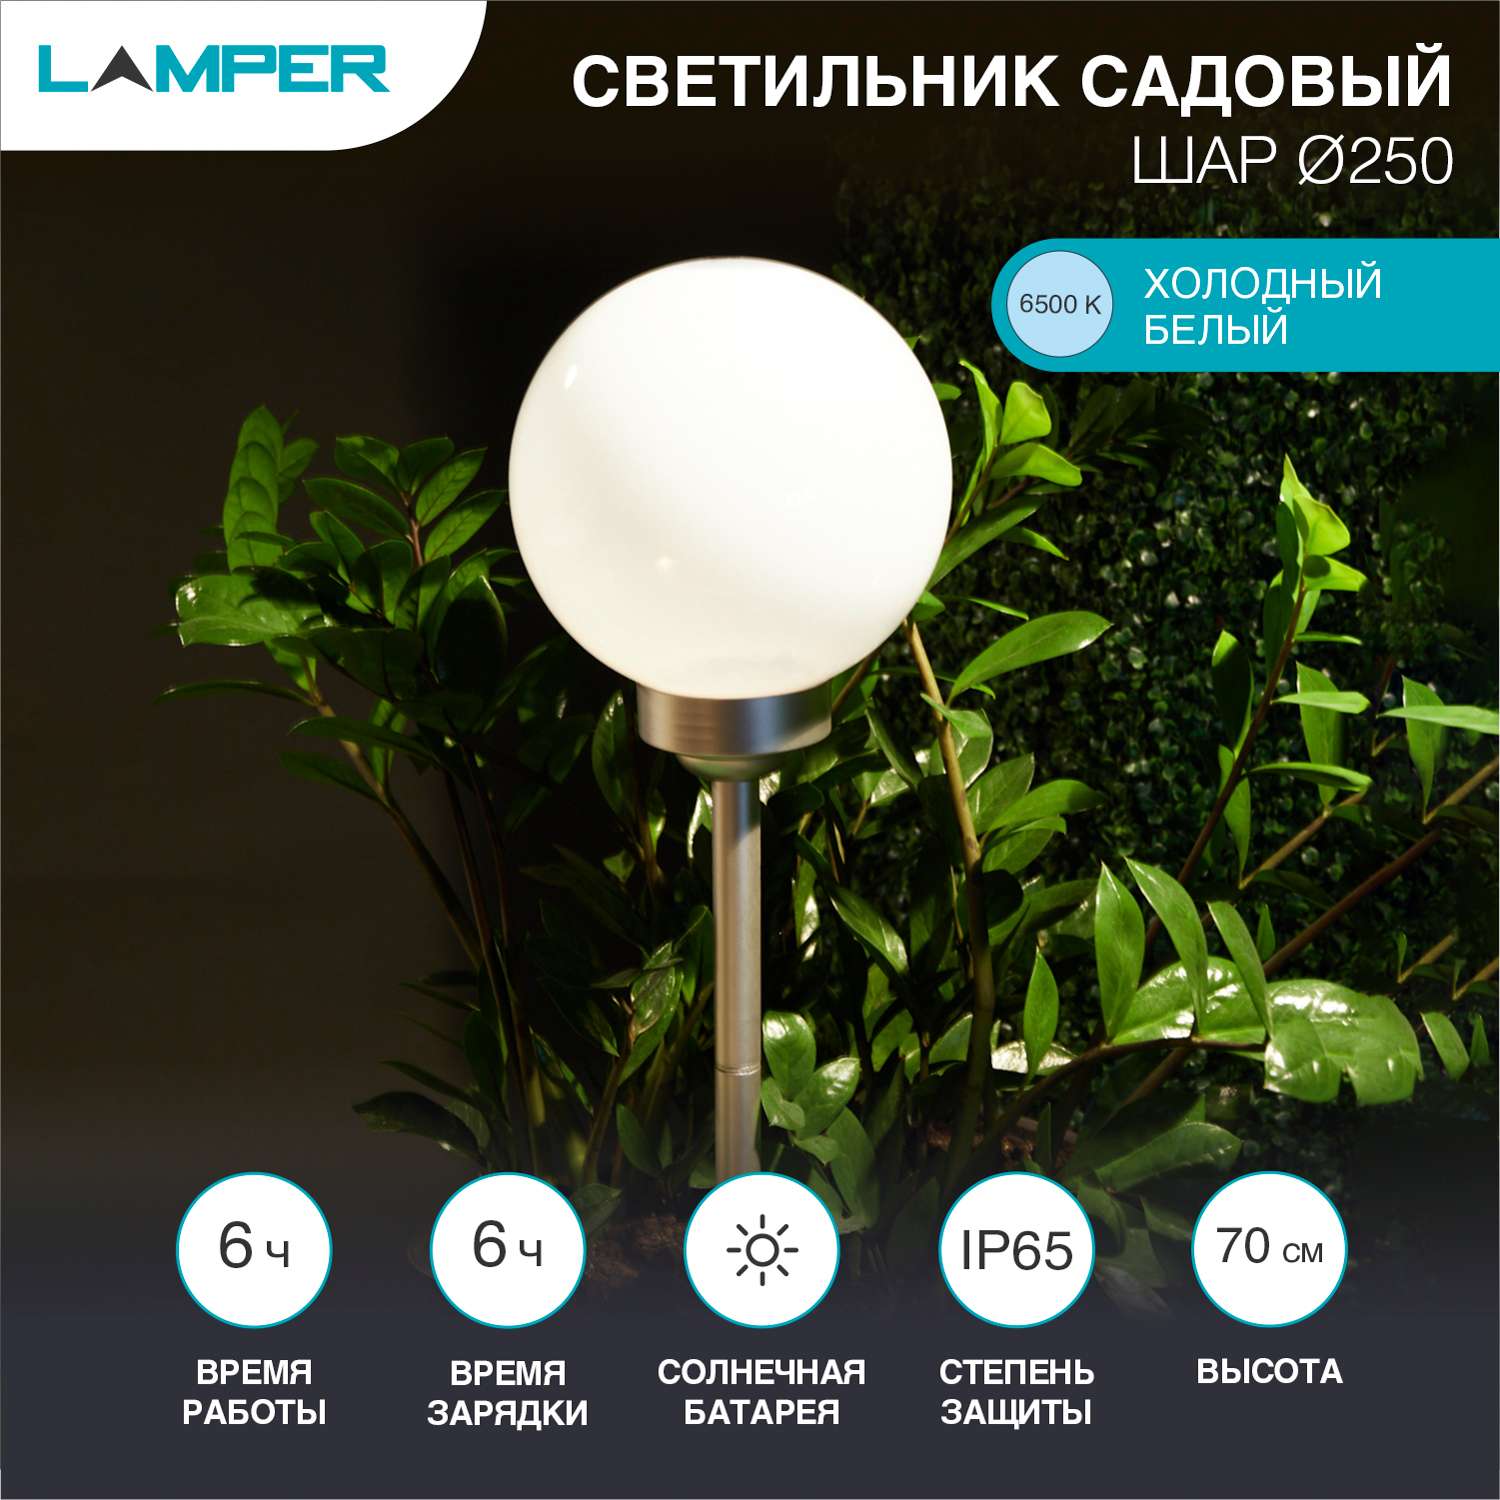 Светильник садовый LAMPER Шар 65х25 см со встроенным аккумулятором солнечной панелью и датчиком освещенности - фото 2